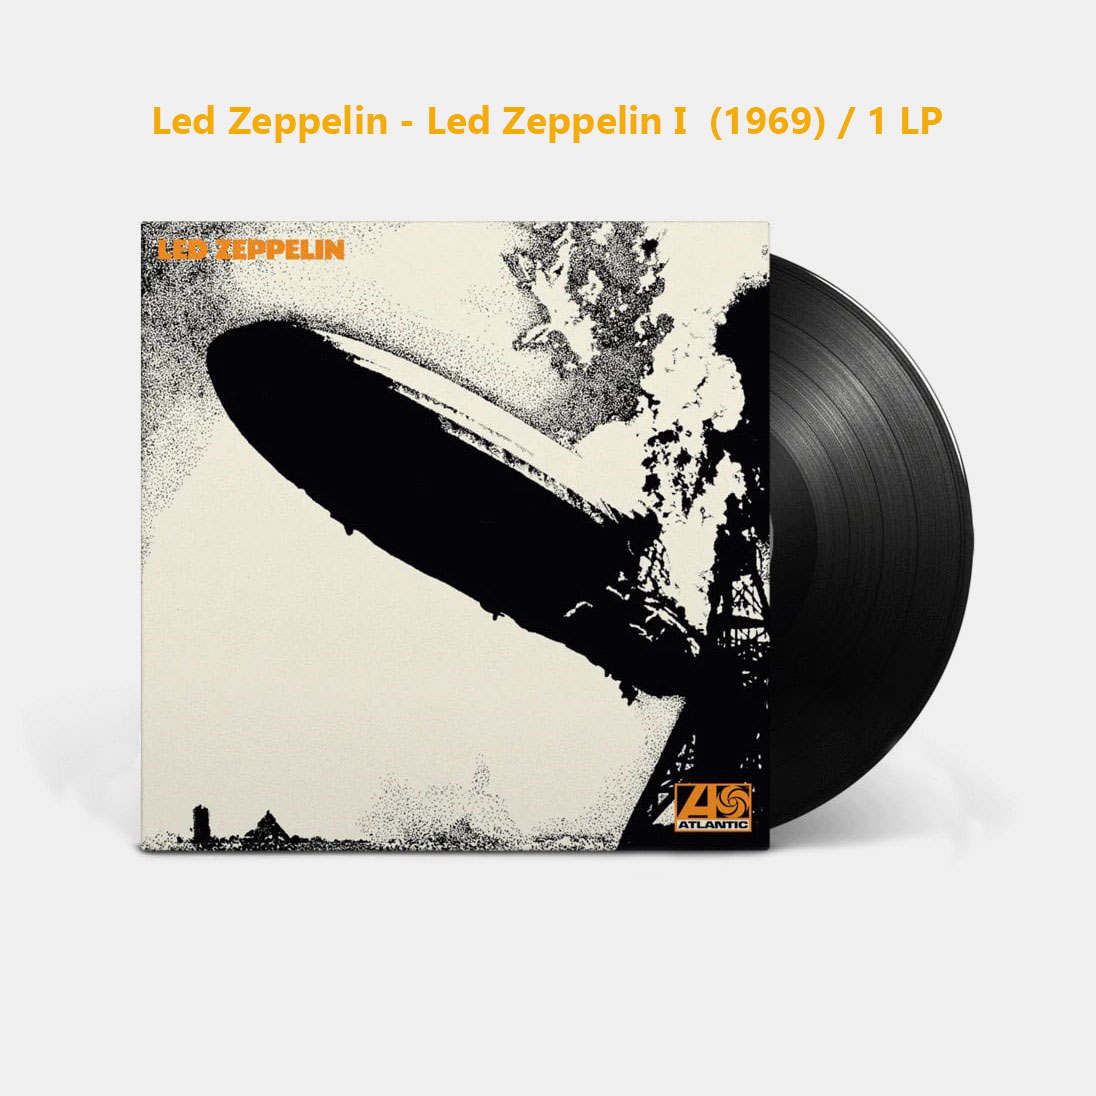 Led Zeppelin - Led Zeppelin I (1969) / 1 LP فروش صفحه گرام لدزپلین